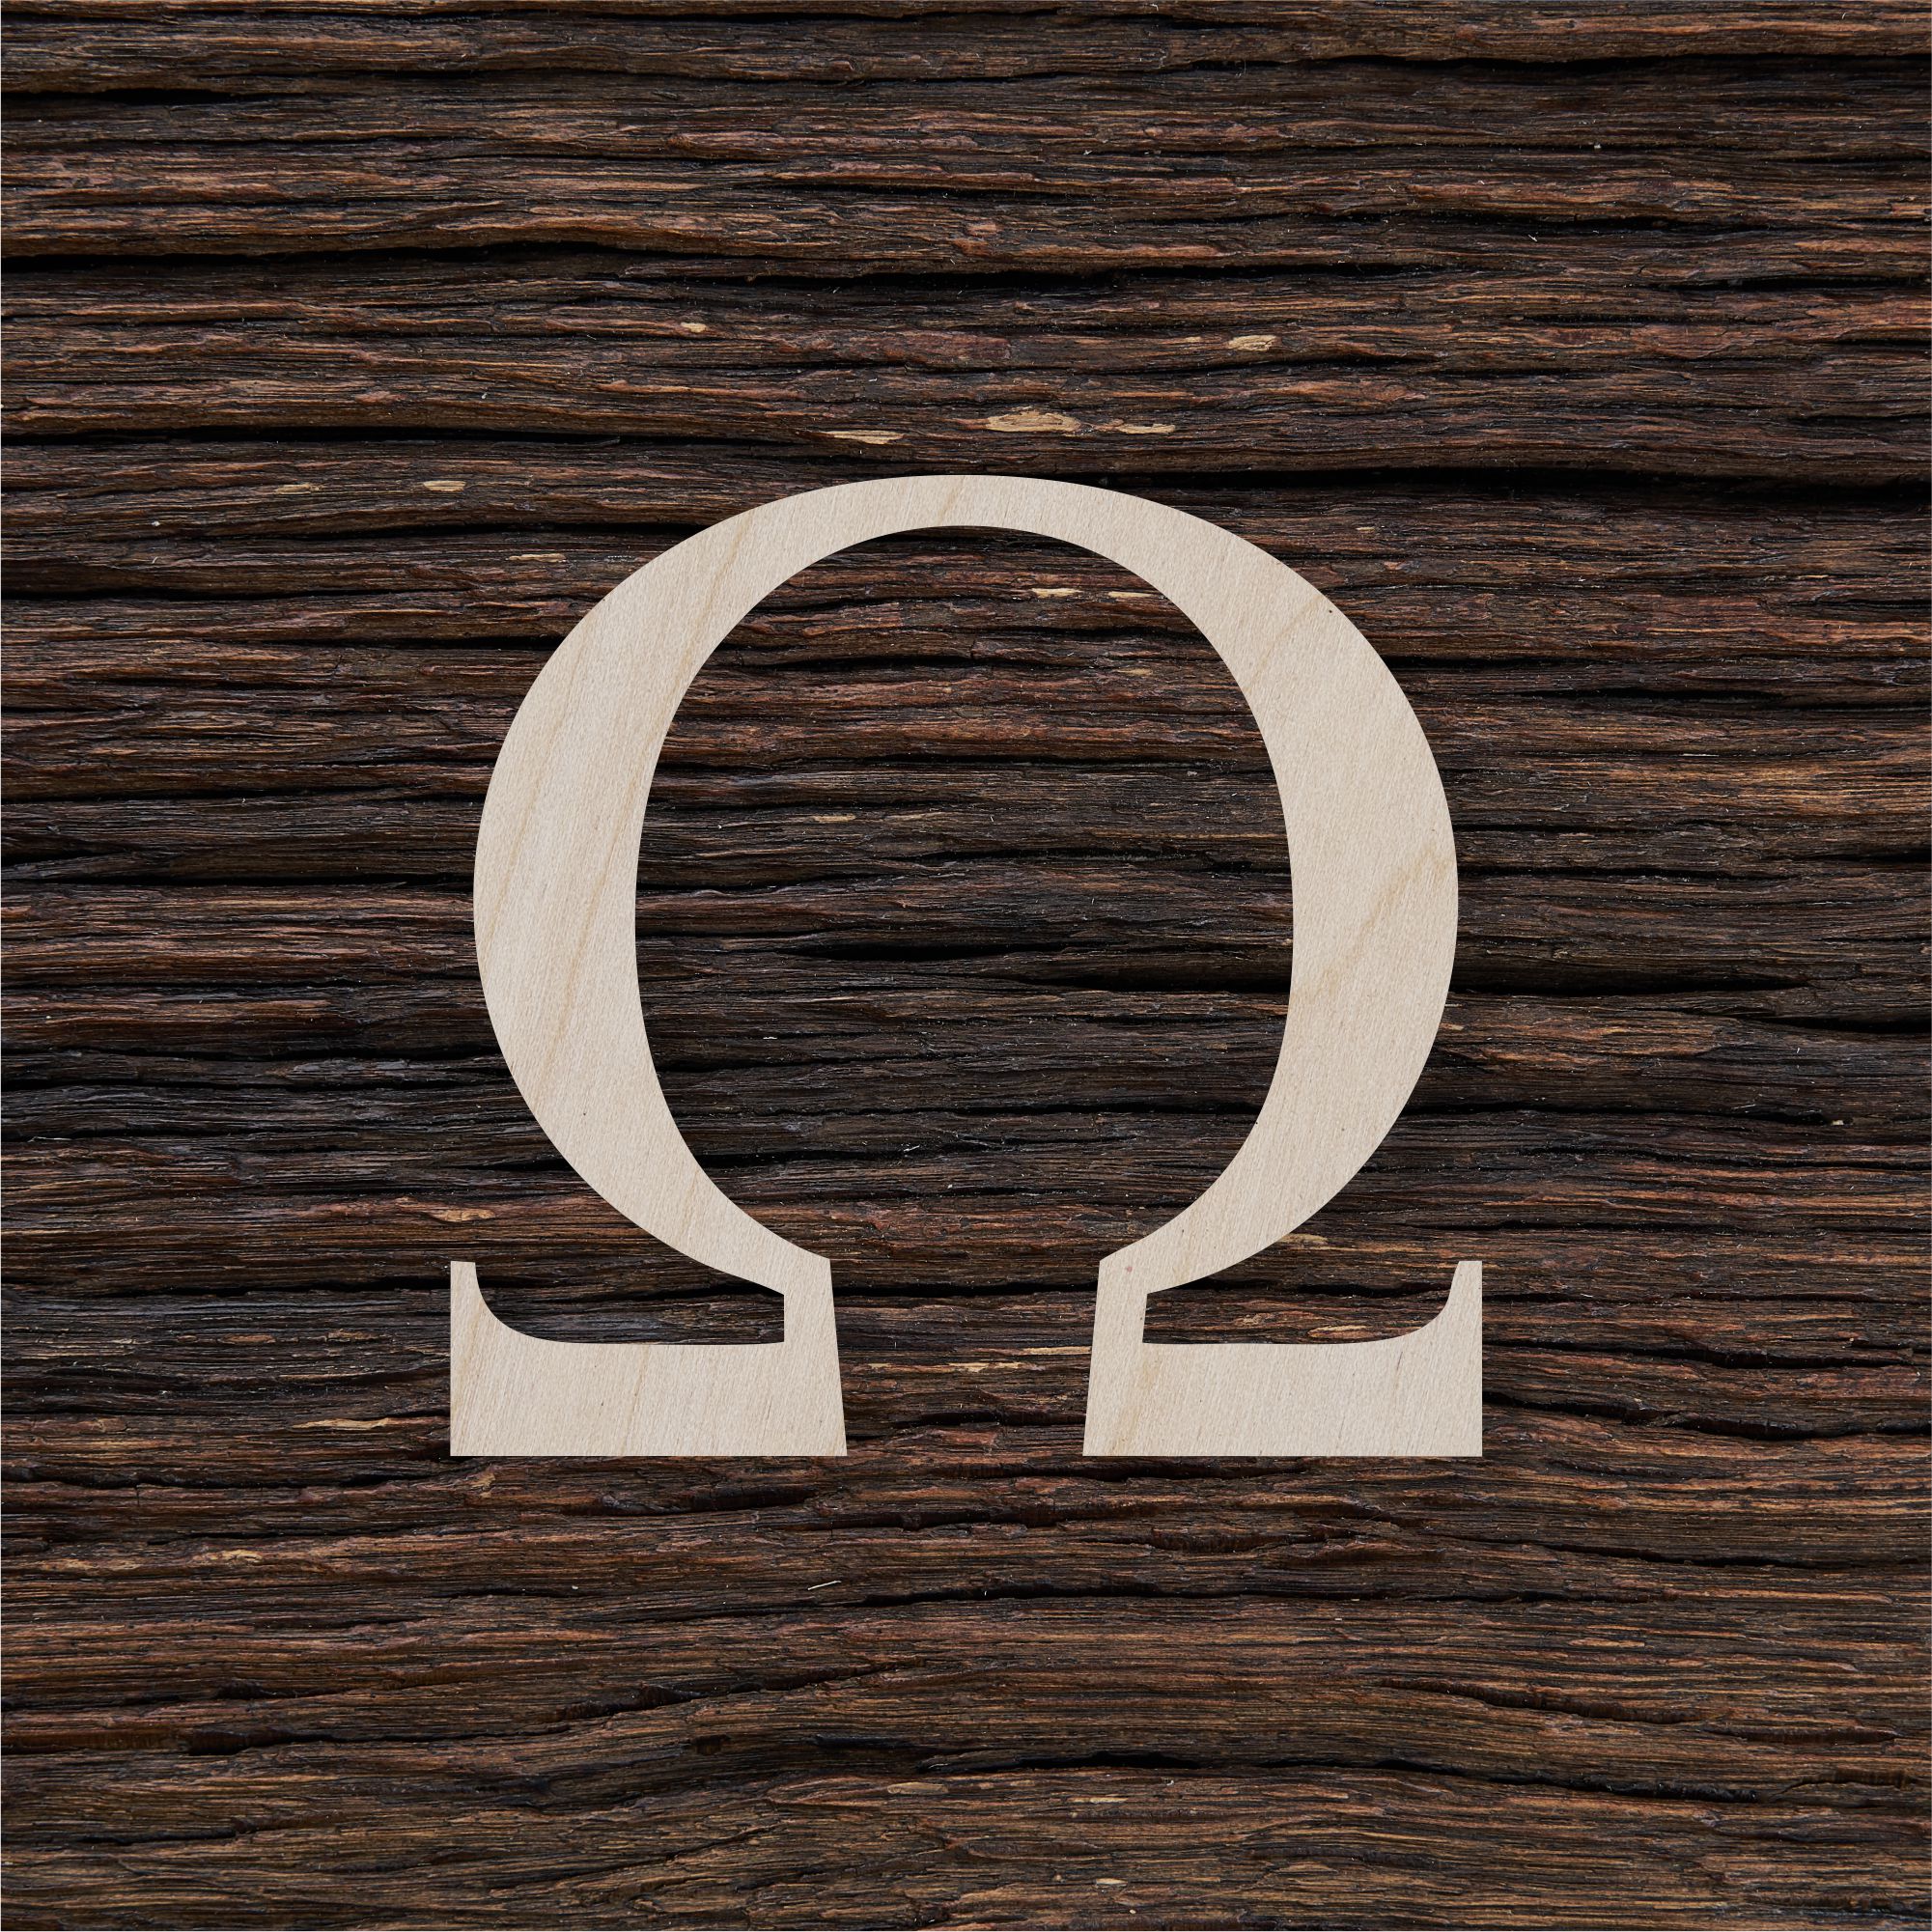 Omega ženklas - medinis gaminys, pjautas lazeriu - dekoravimui ir dažymui 